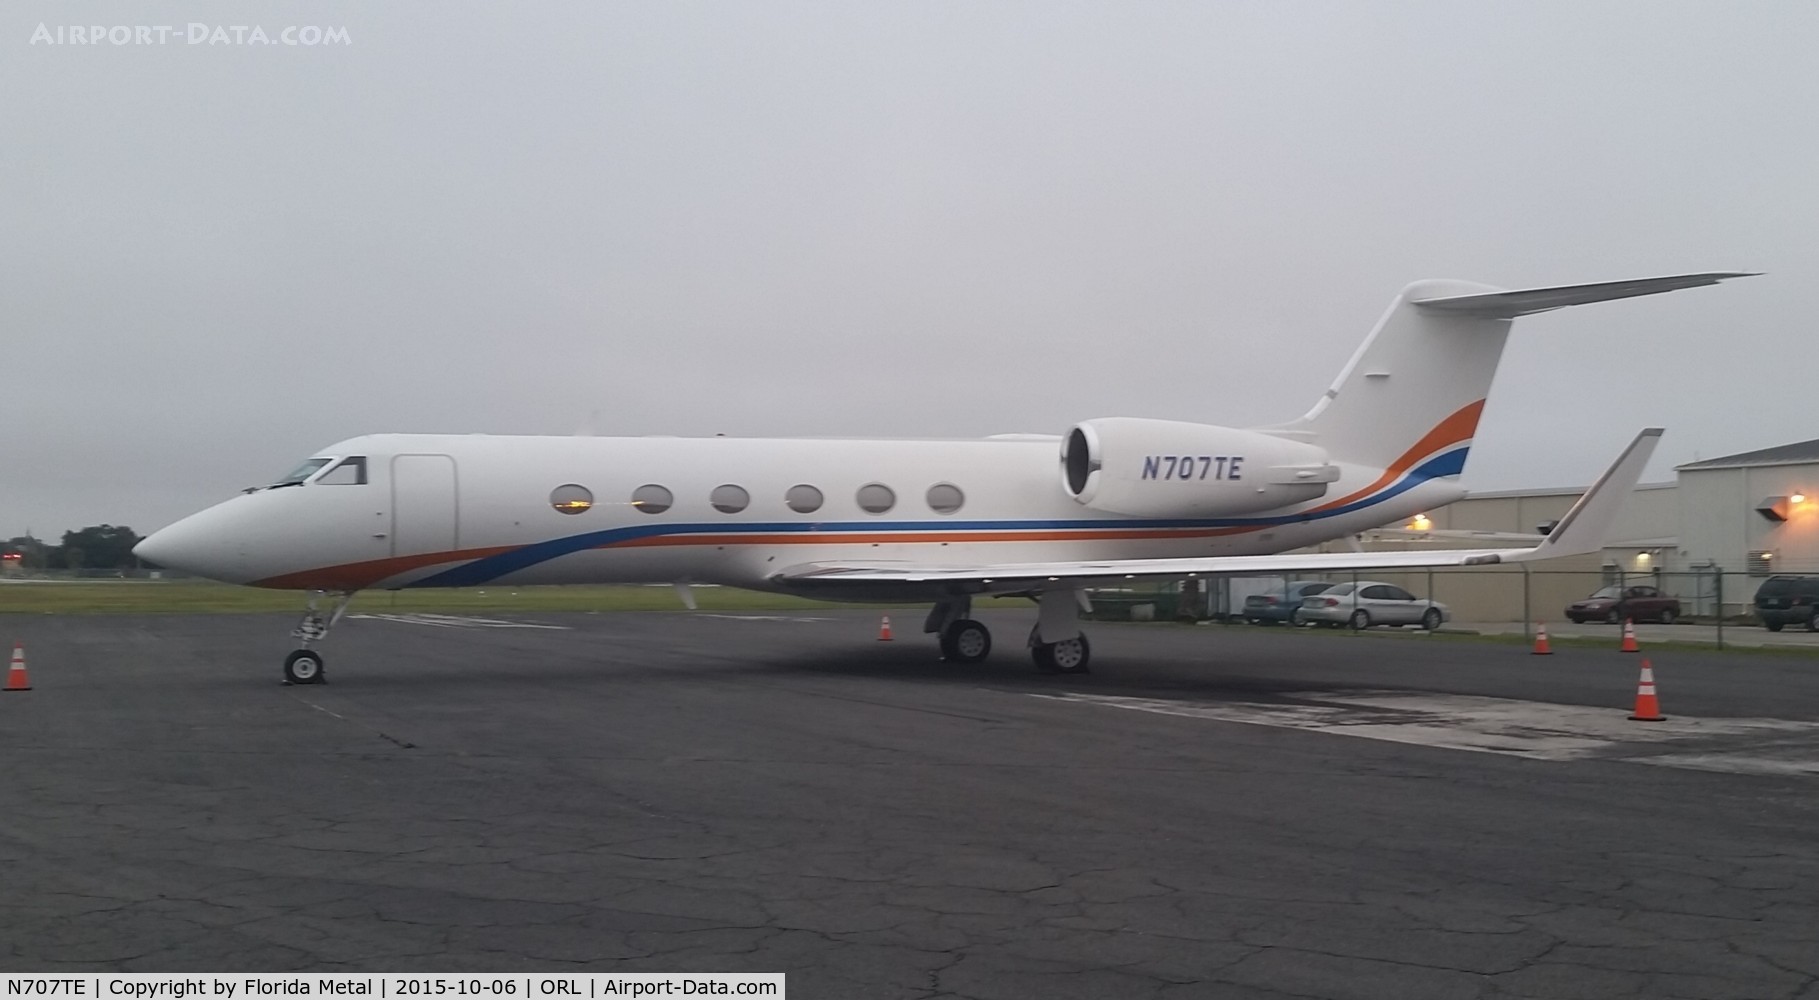 N707TE, 2000 Gulfstream Aerospace G-IV SP C/N 1383, Gulfstream IV